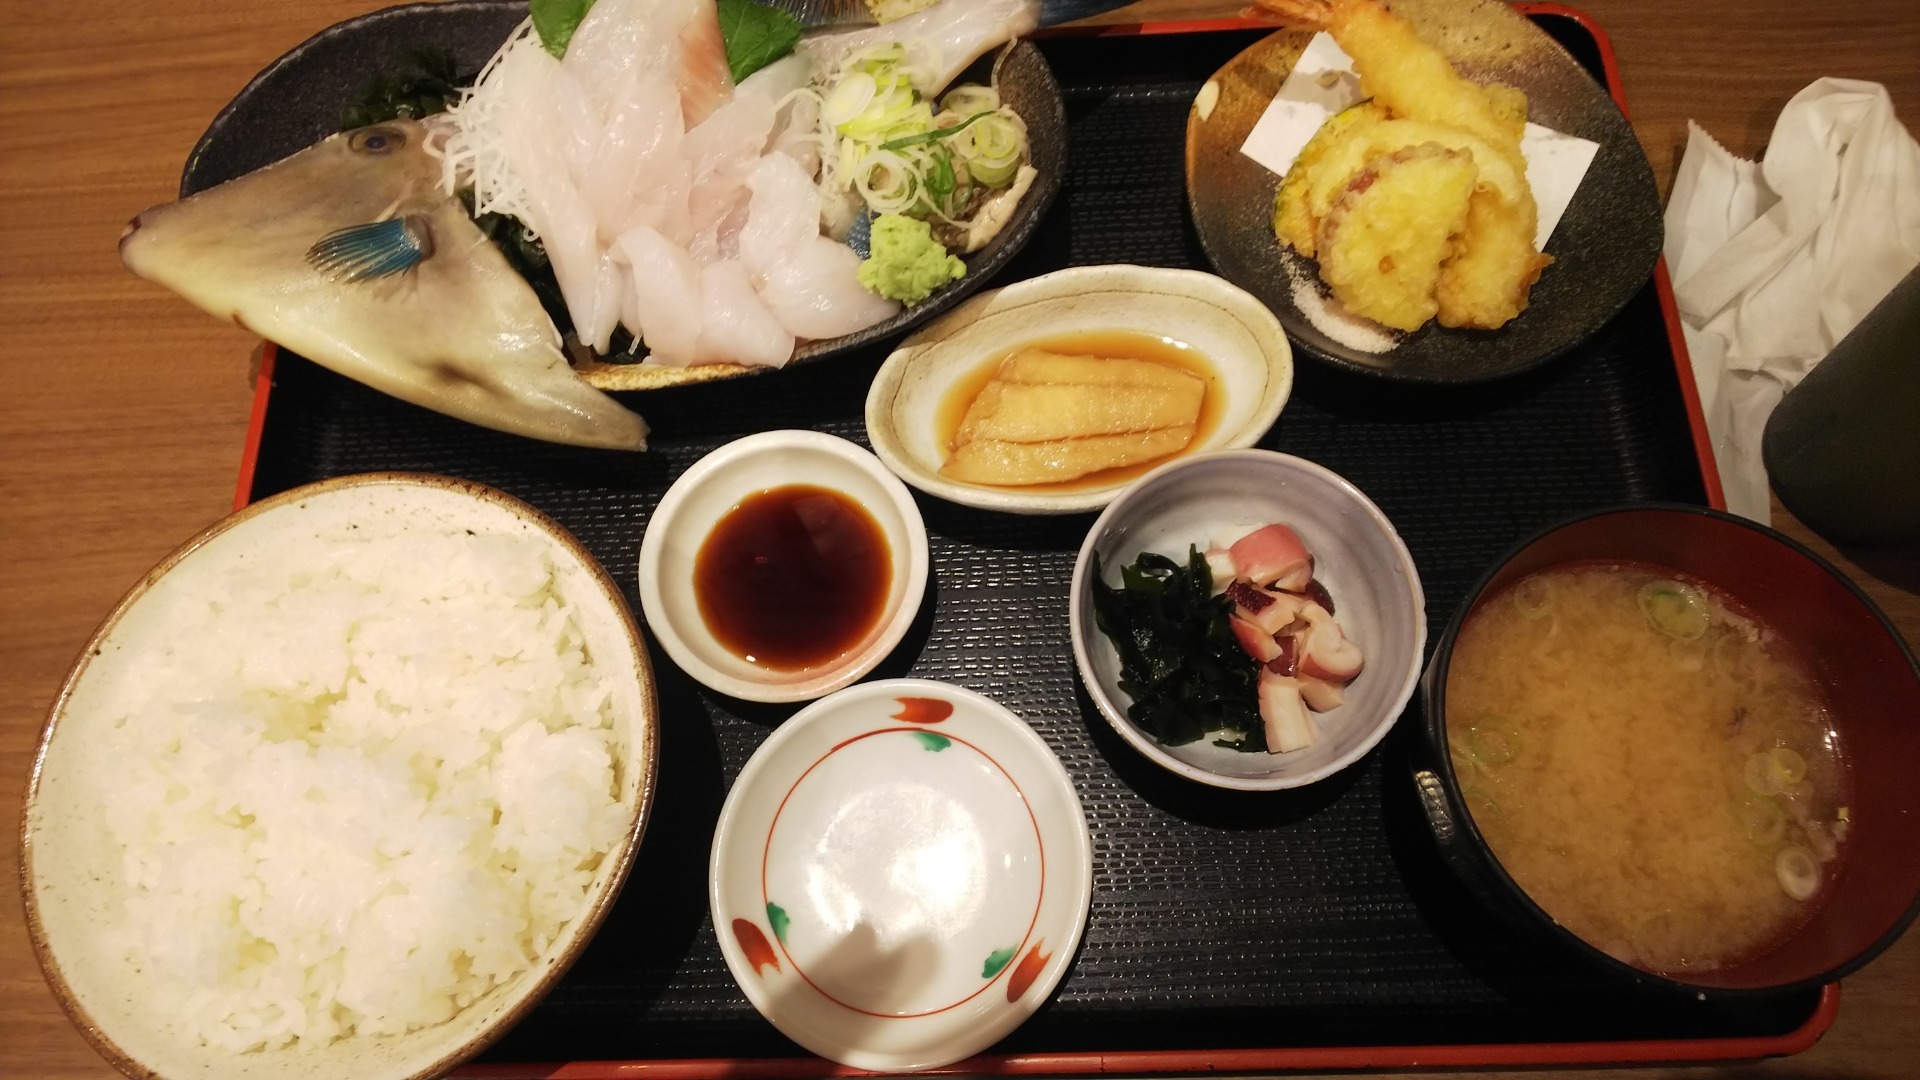 石川県の素敵なお店や釣りスポットを紹介します 金沢中央市場でカワハギの刺身定食を食べました